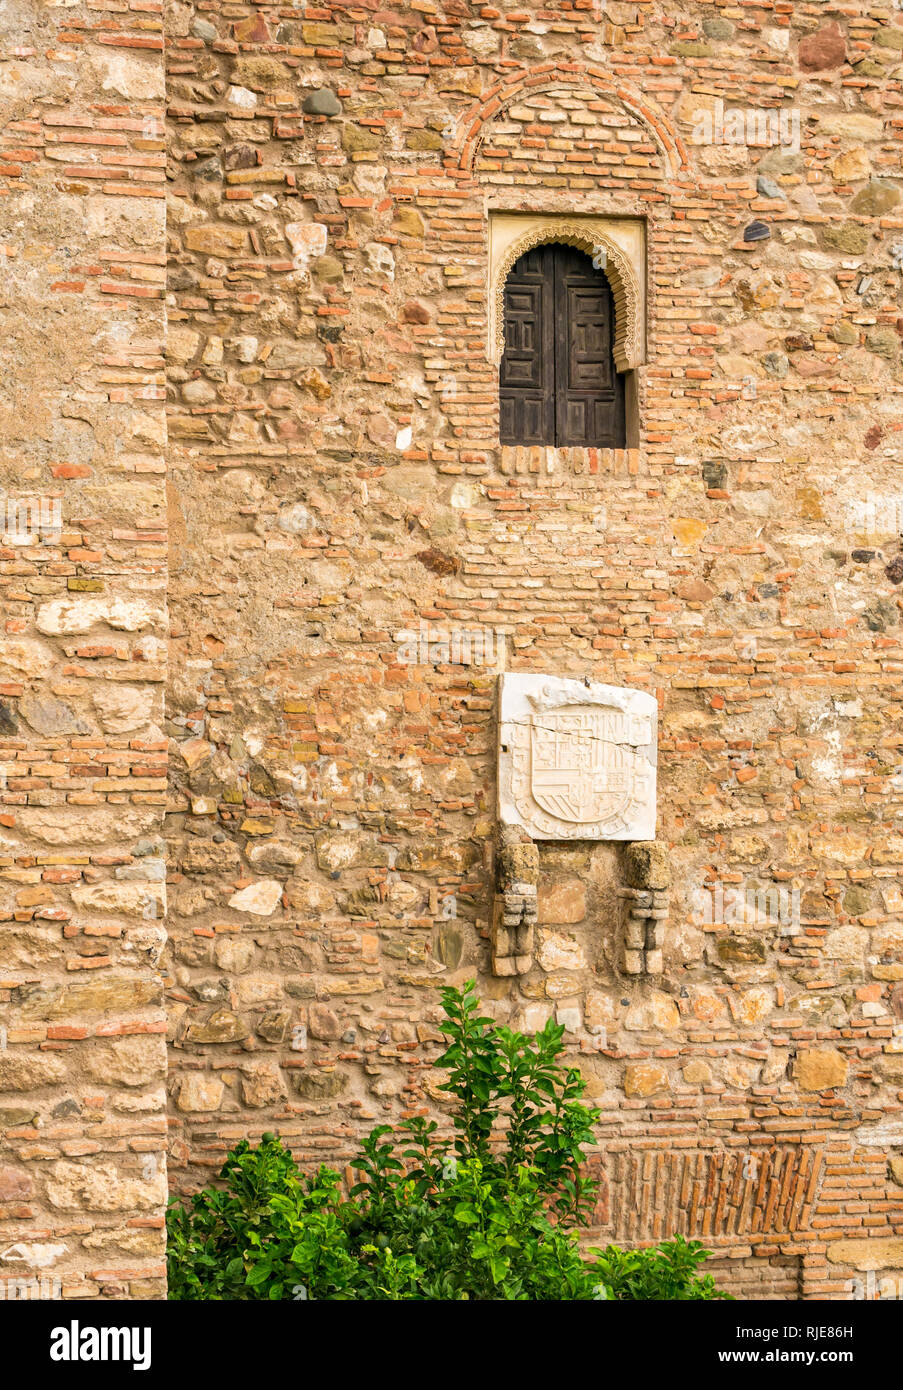 Détail de pierres sculptées, Alcazaba palais fortifié wall, Malaga, Andalousie, Espagne Banque D'Images